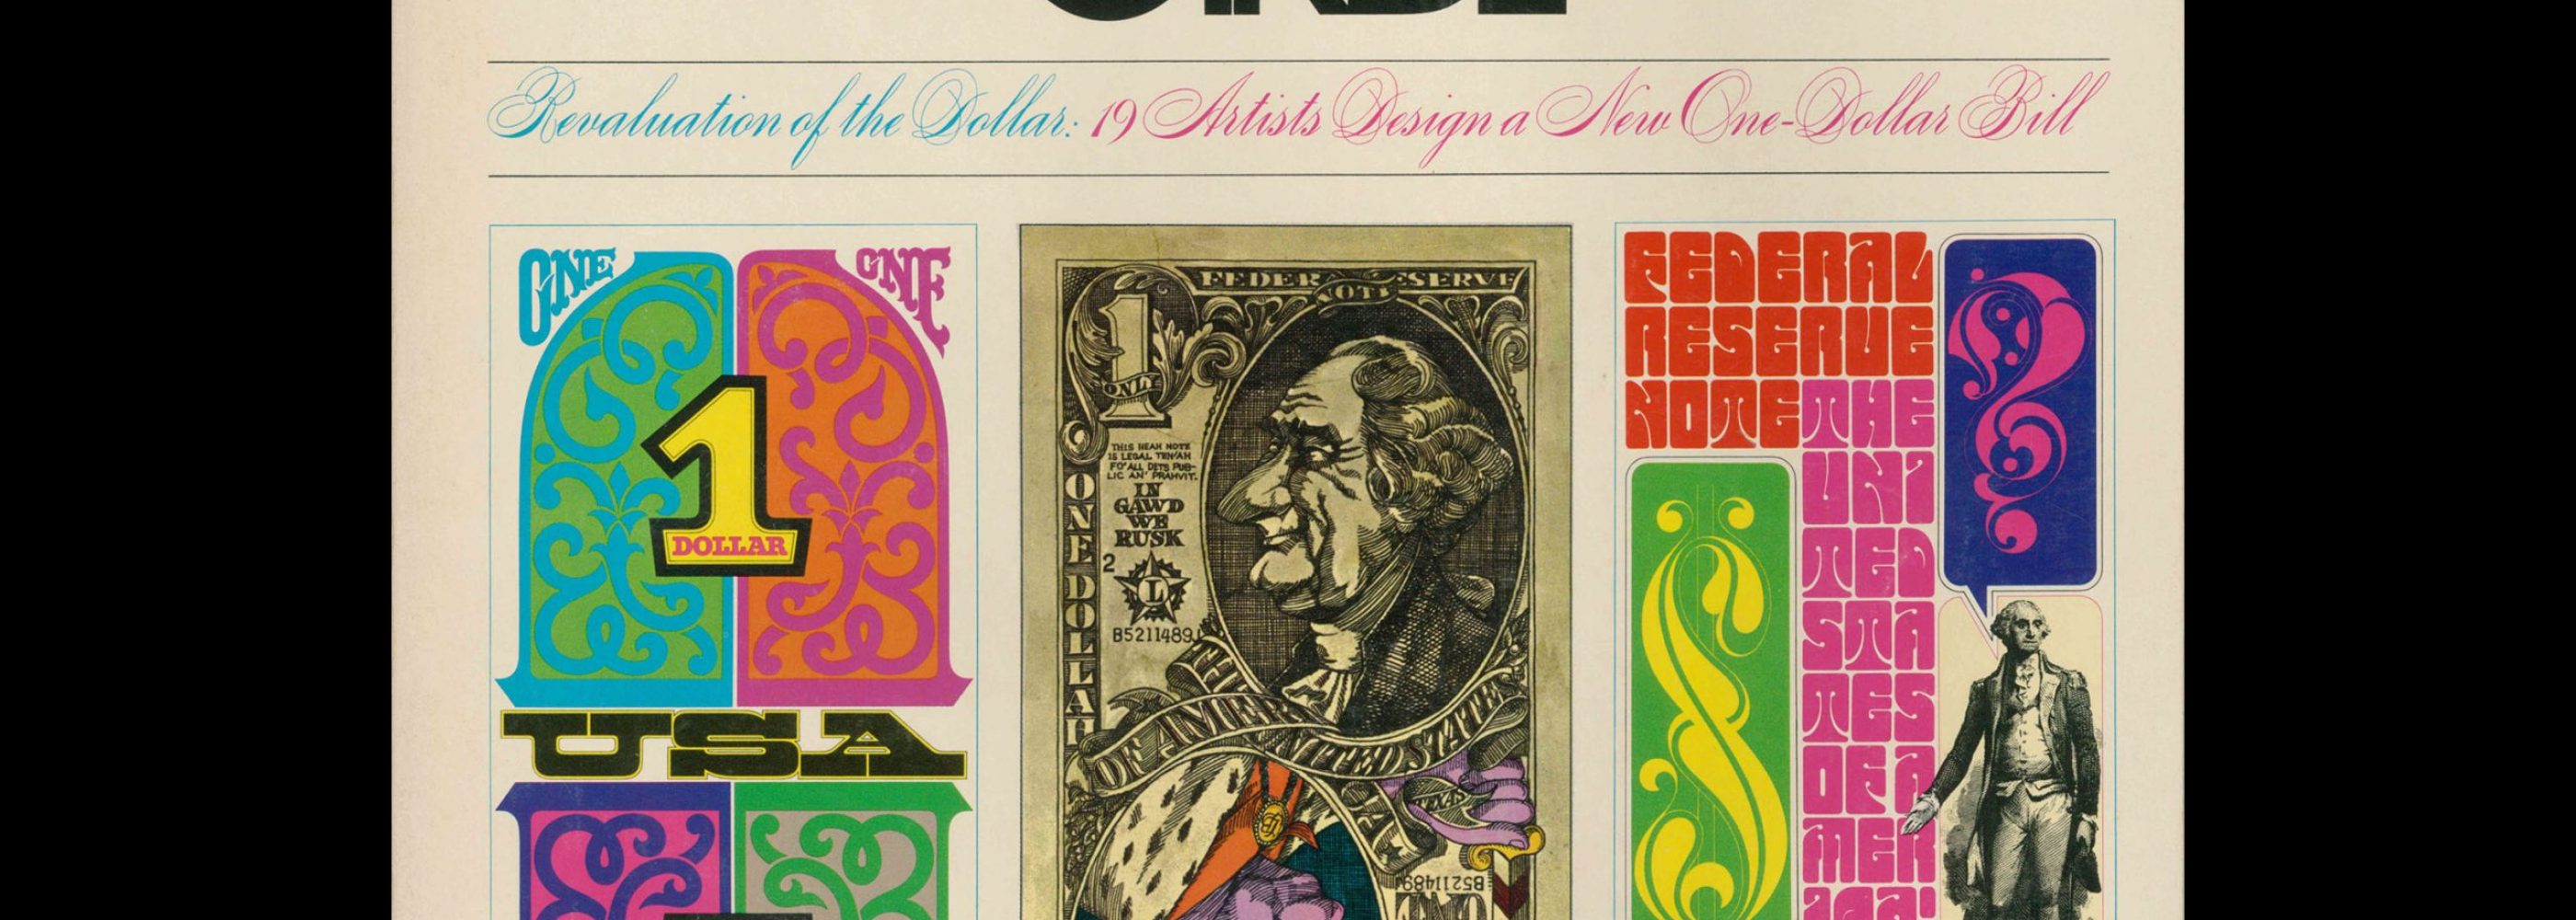 Avant Garde Volume 3, May 1968. Designed by Herb Lubalin